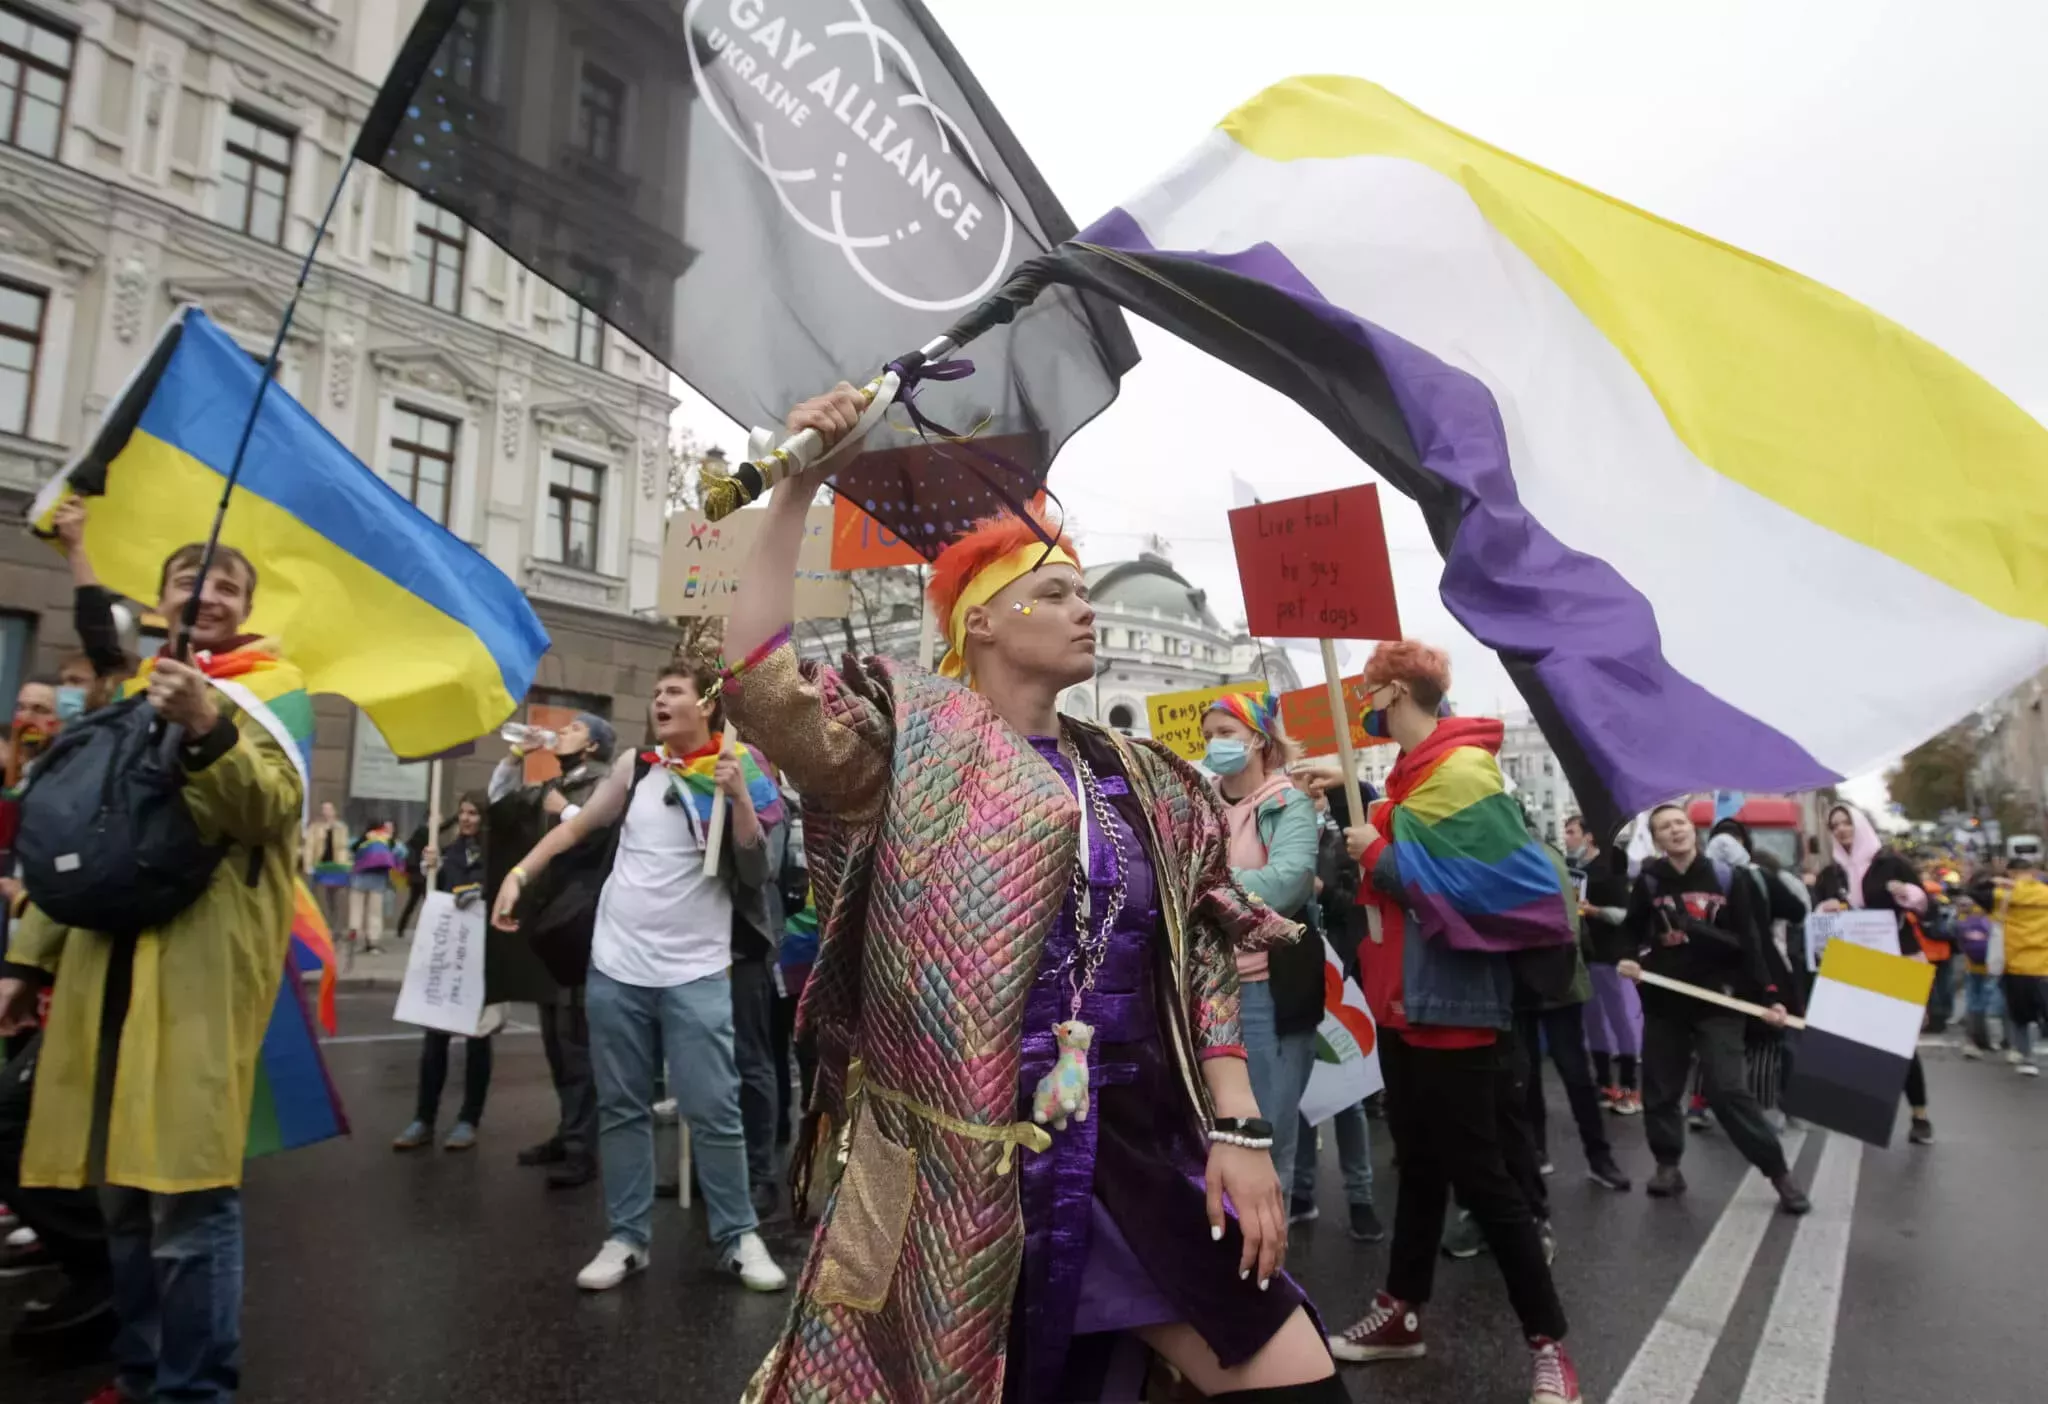 Las impactantes fotos del Orgullo ucraniano muestran a miles de personas marchando desafiantes por la liberación LGBT+